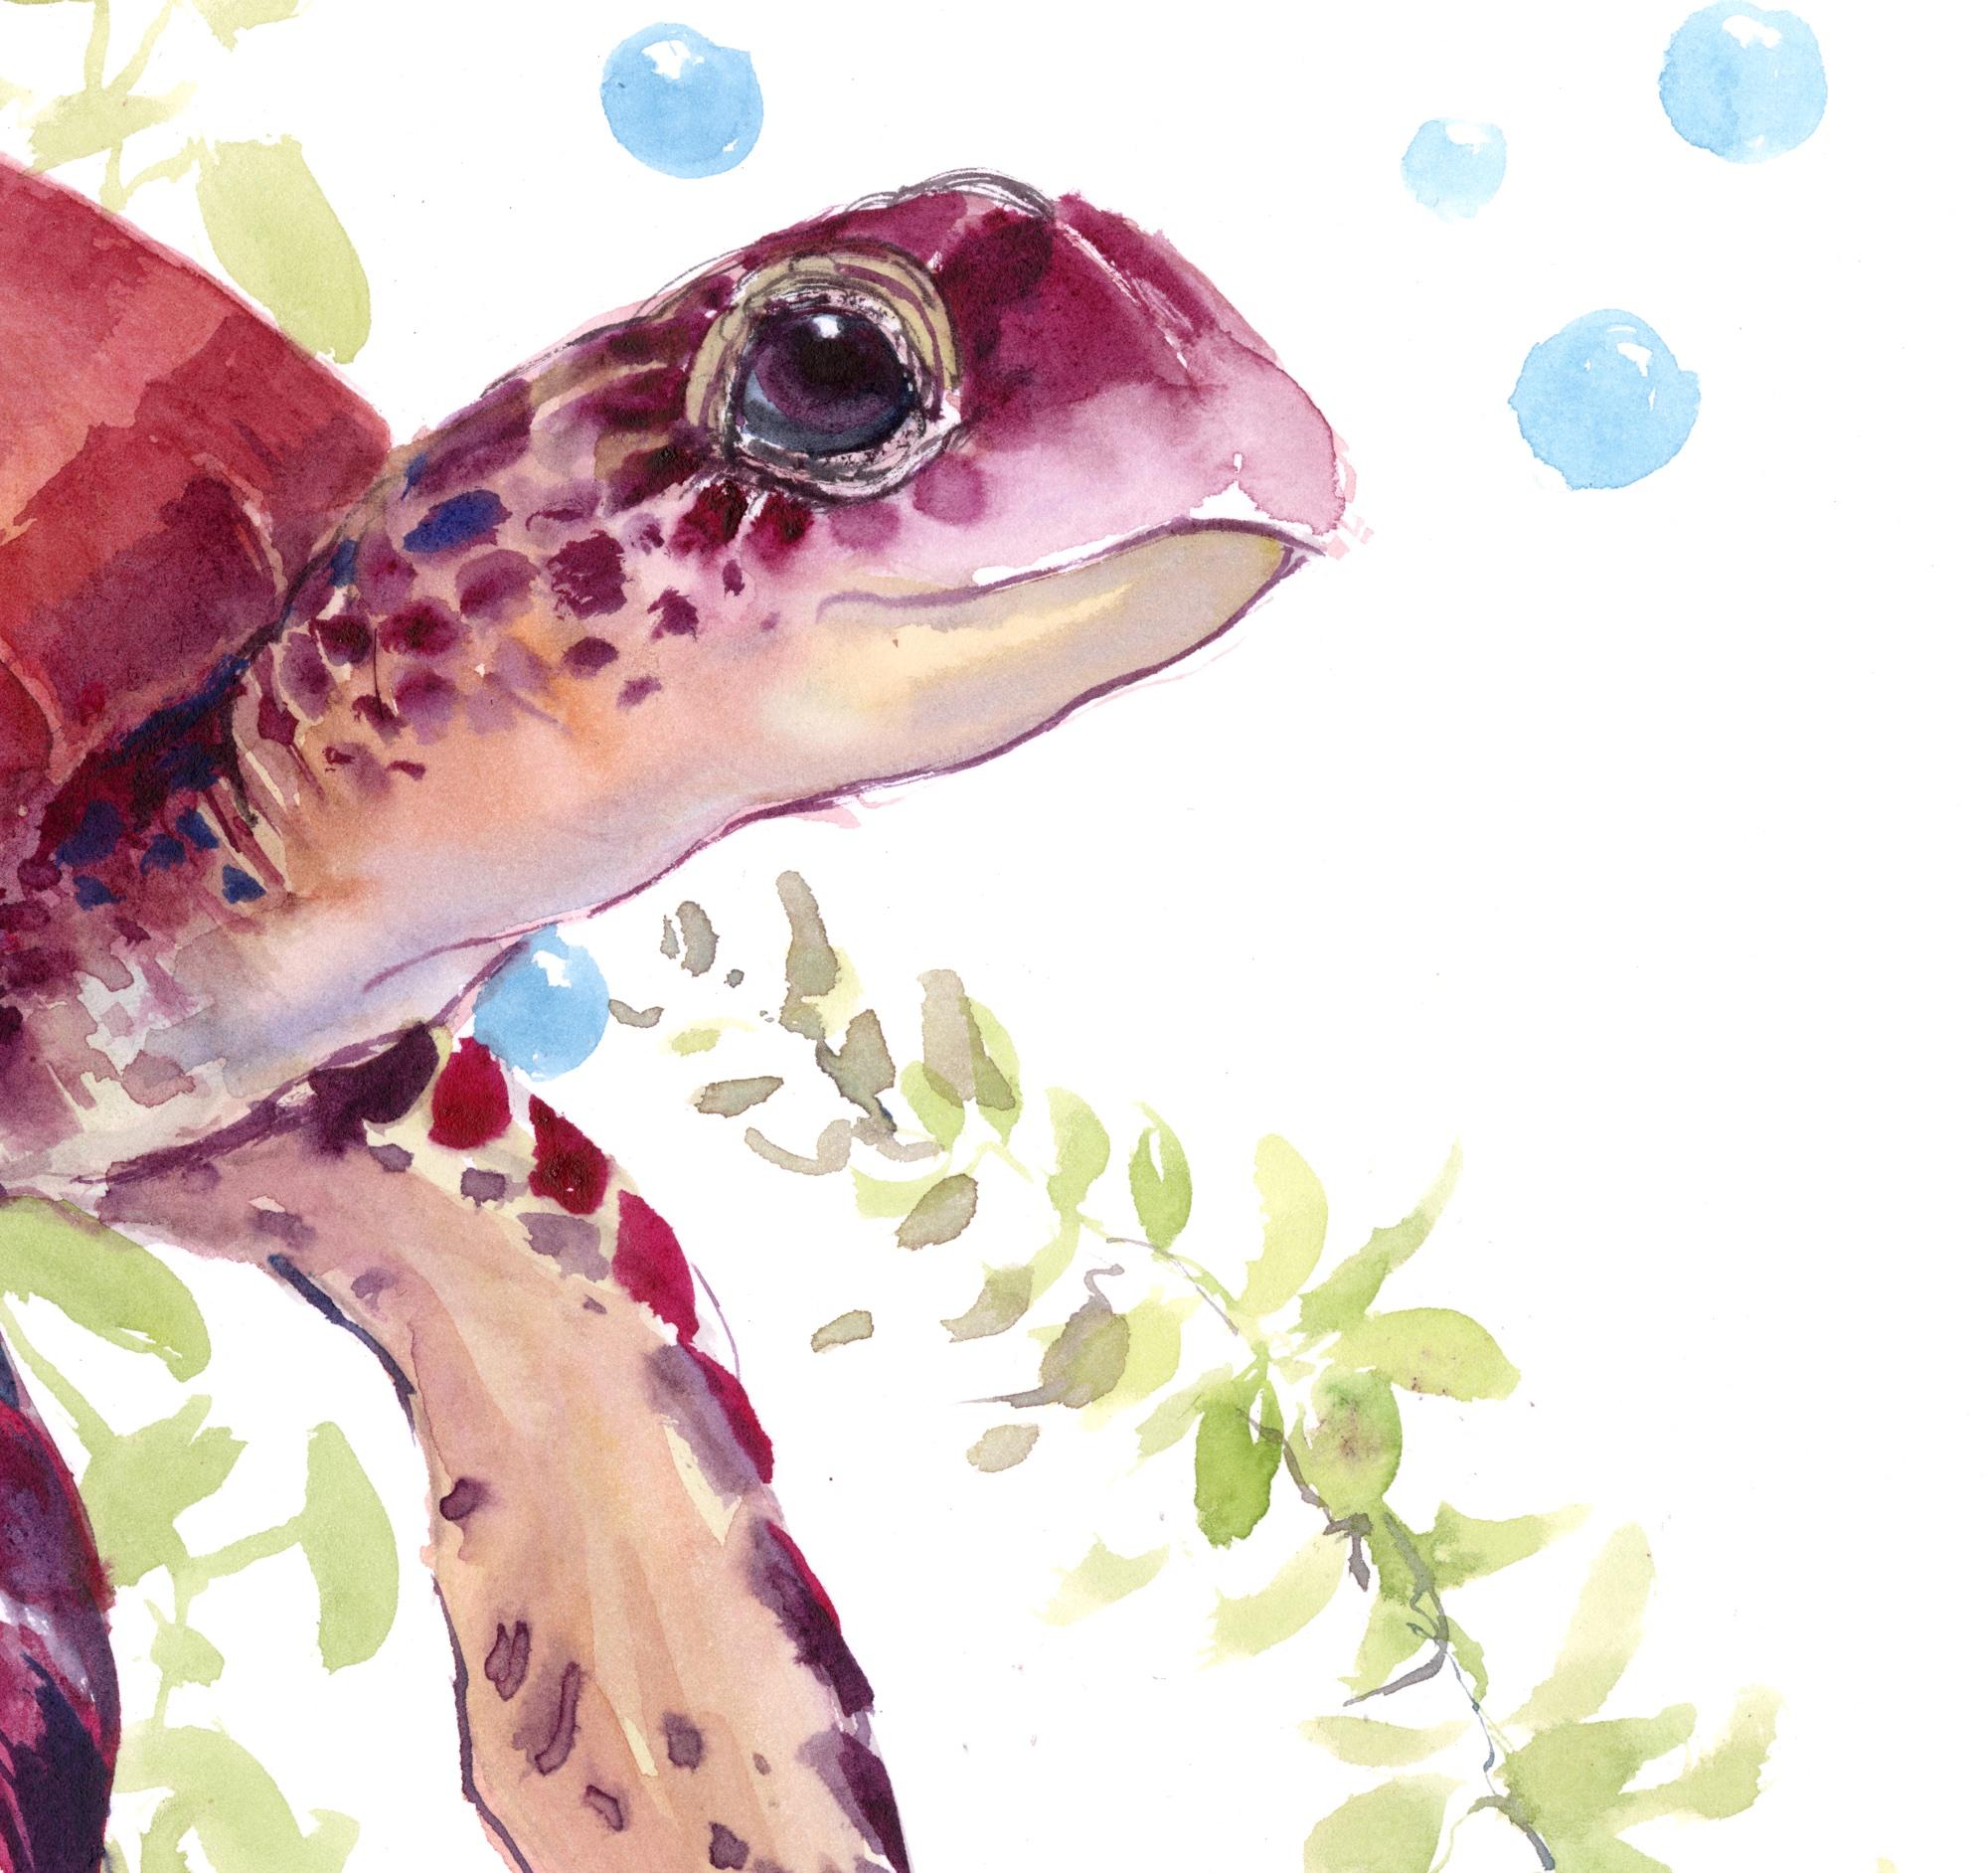 <p>Kommentare des Künstlers<br>Der Künstler Suren Nersisyan zeigt ein impressionistisches Porträt einer charmanten roten Meeresschildkröte. Er stellt sich das schalenförmige Reptil vor, das im erfrischenden Ozean schwimmt. Seetangblätter schwimmen